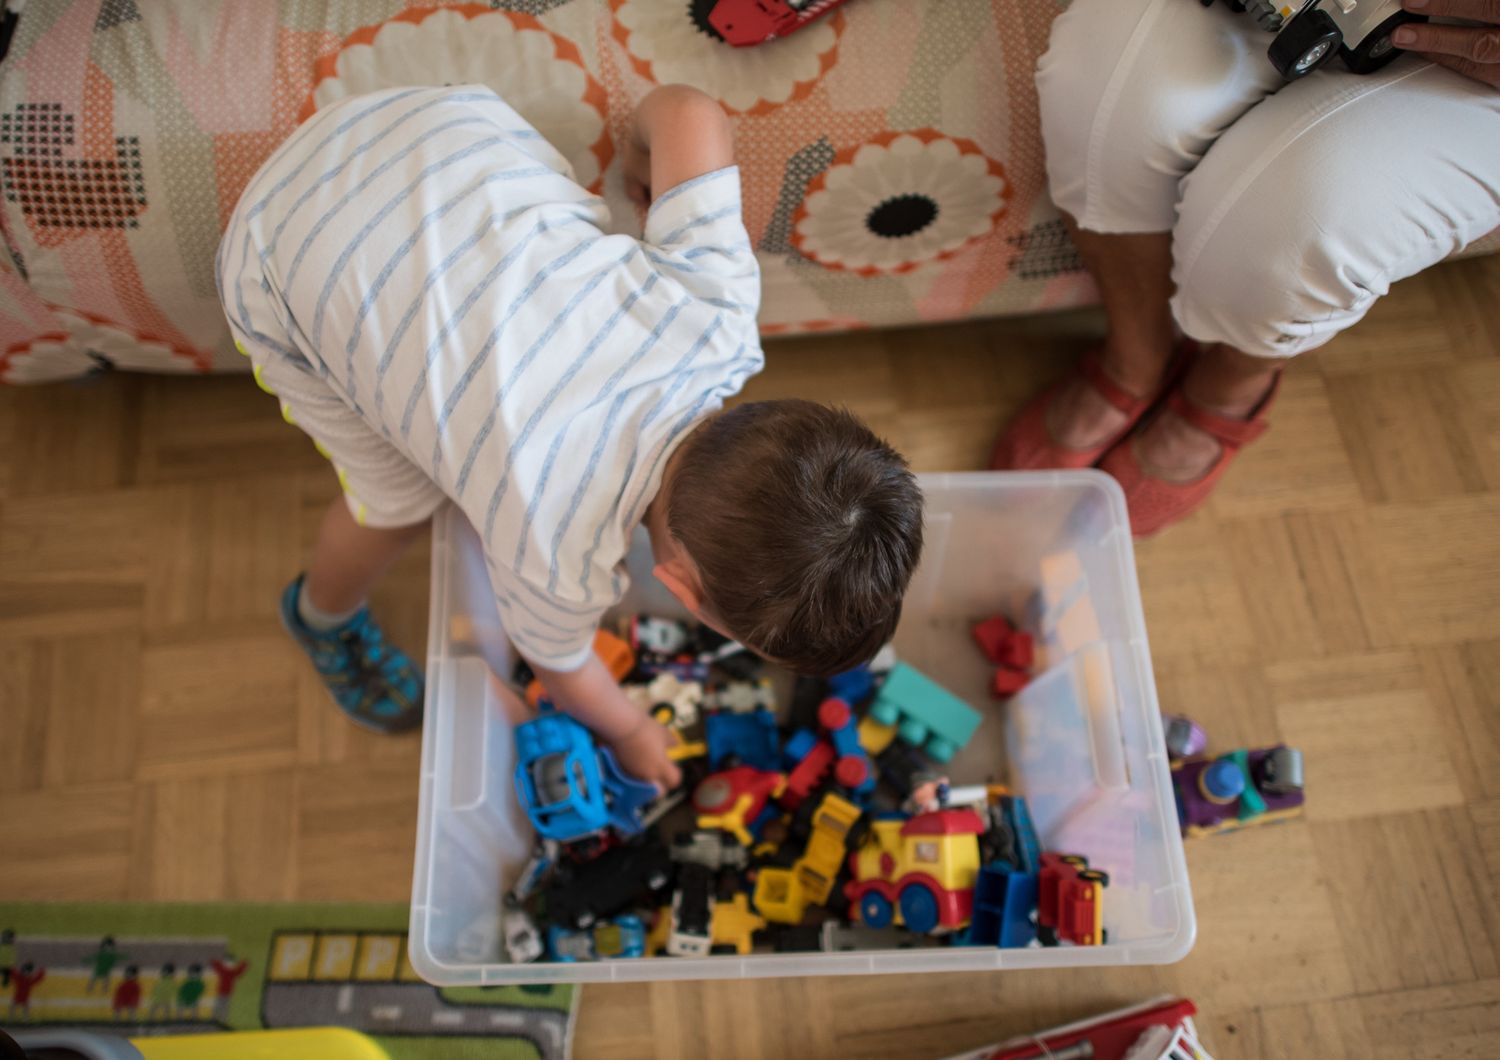 &nbsp;Un bambino di due anni alle prese con una scatola piena di giocattoli